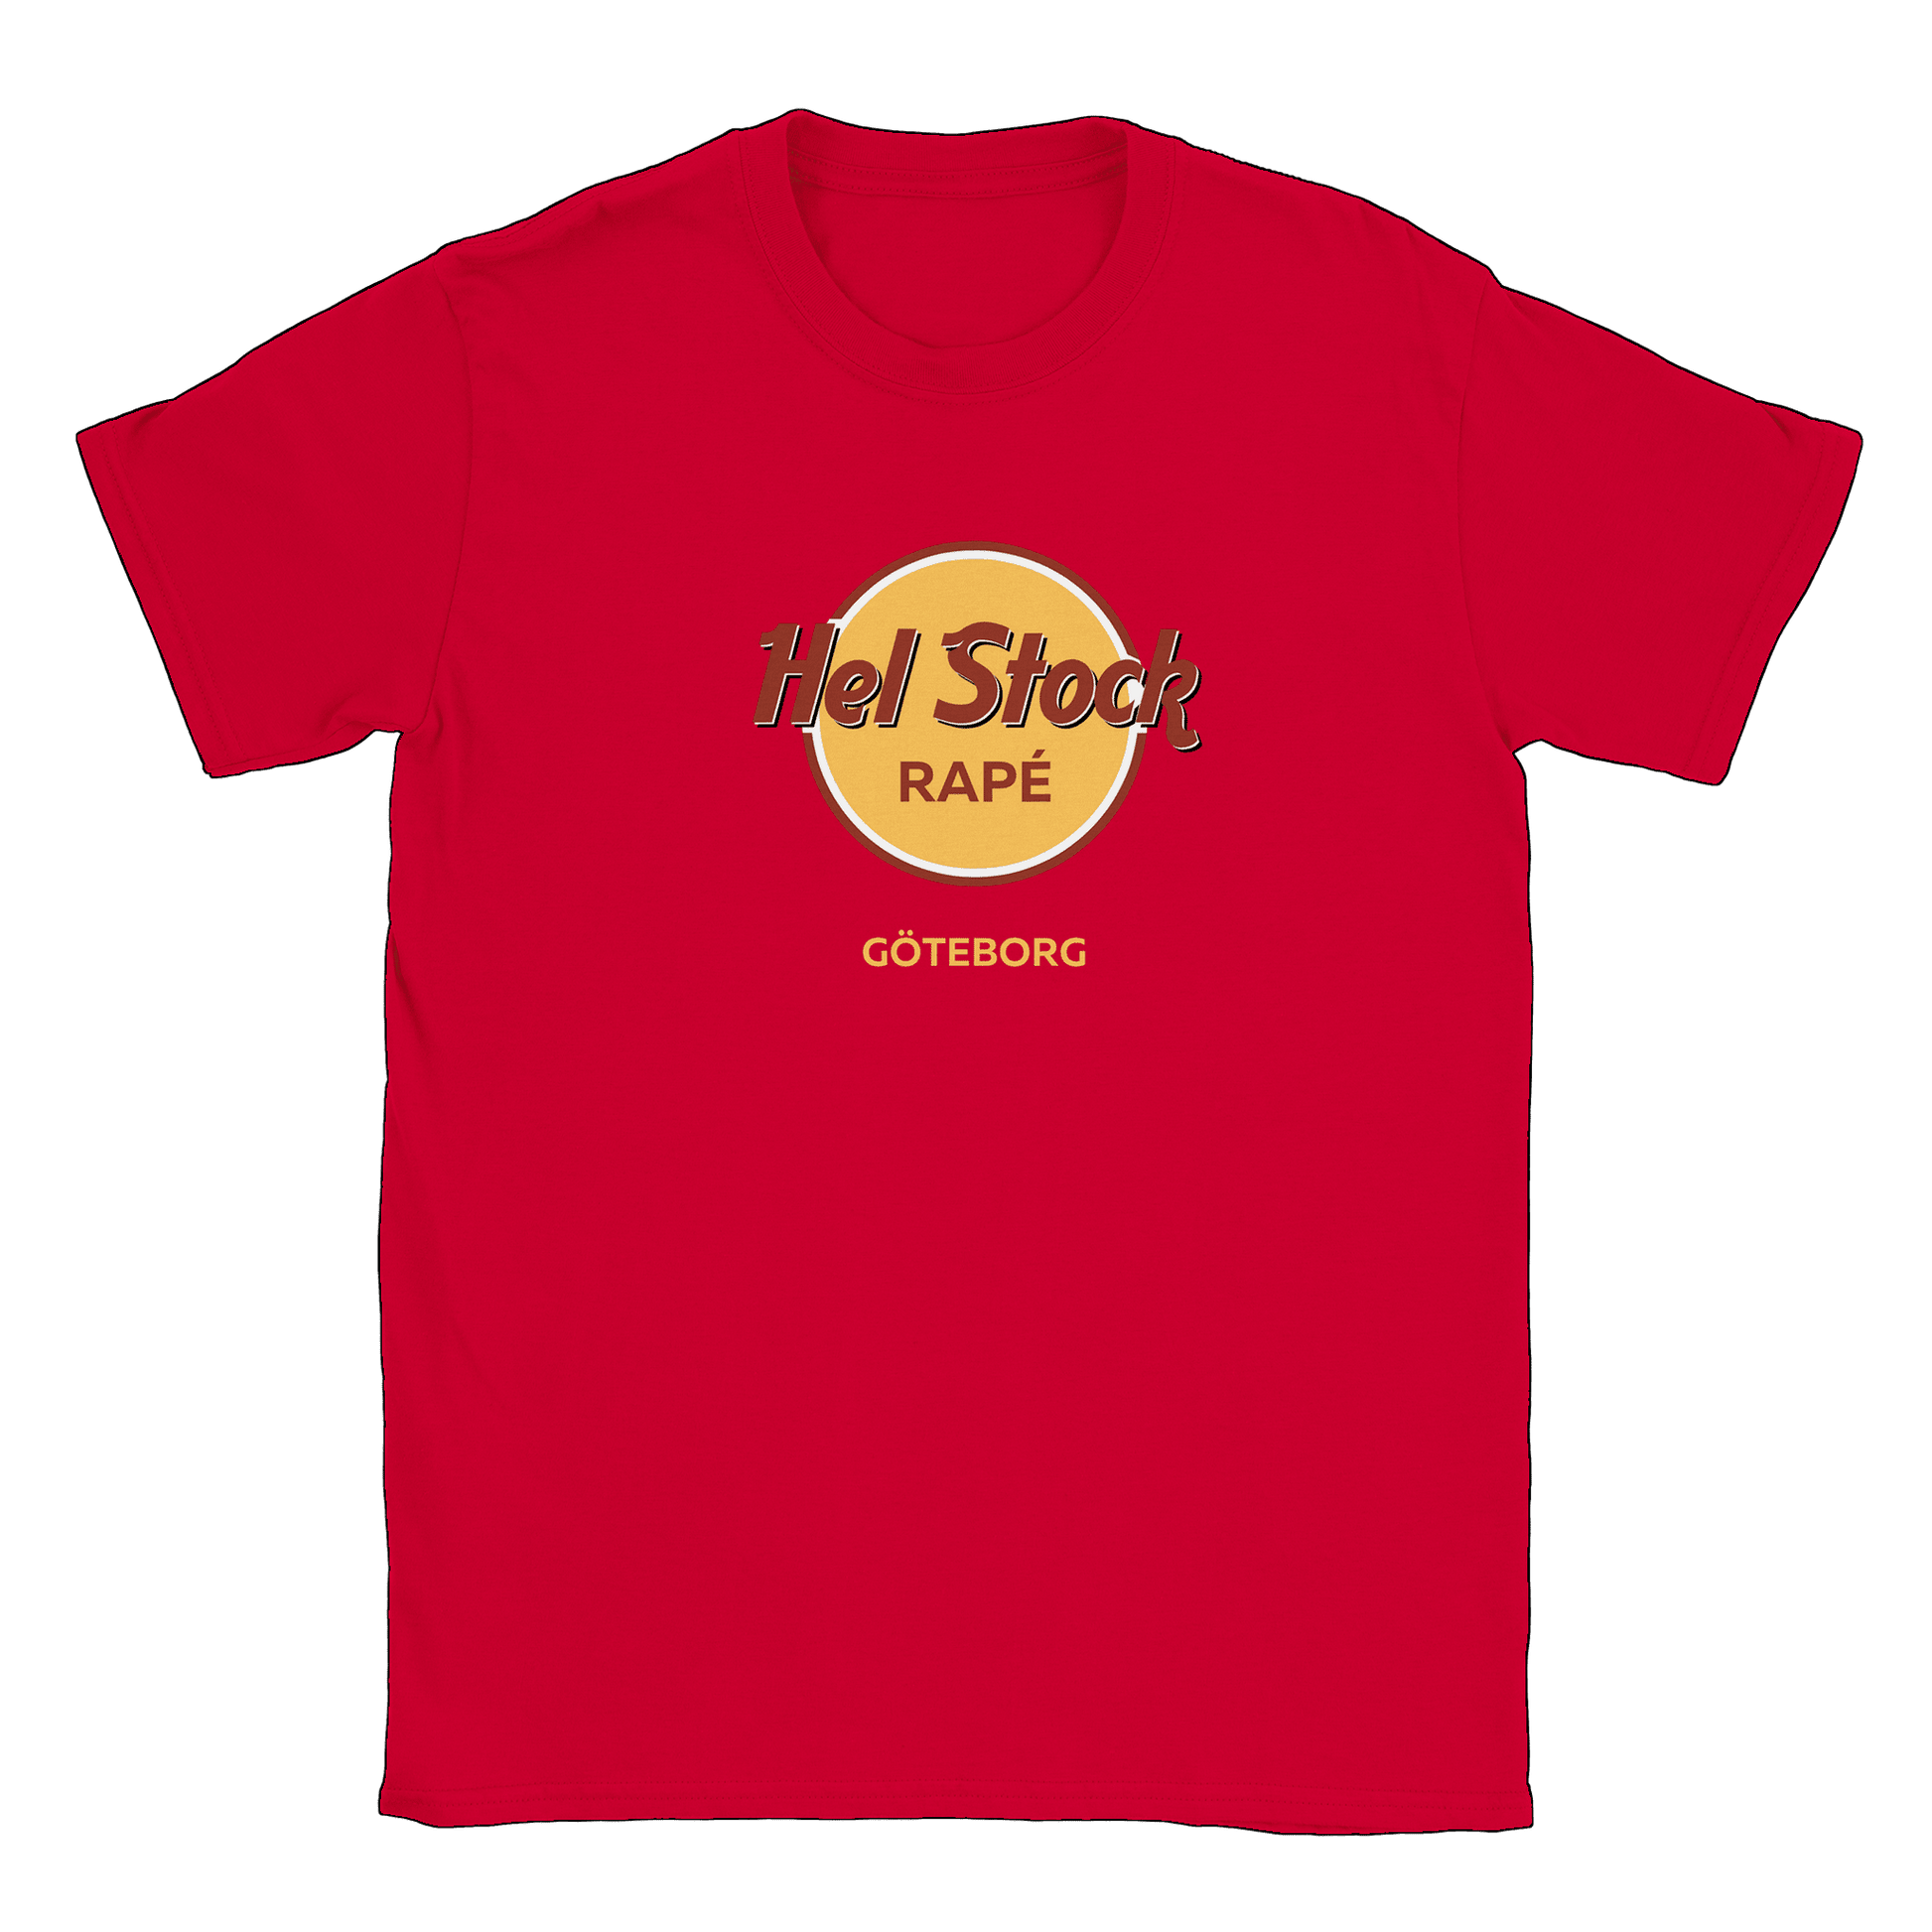 Hel Stock Rapé - T-shirt Röd